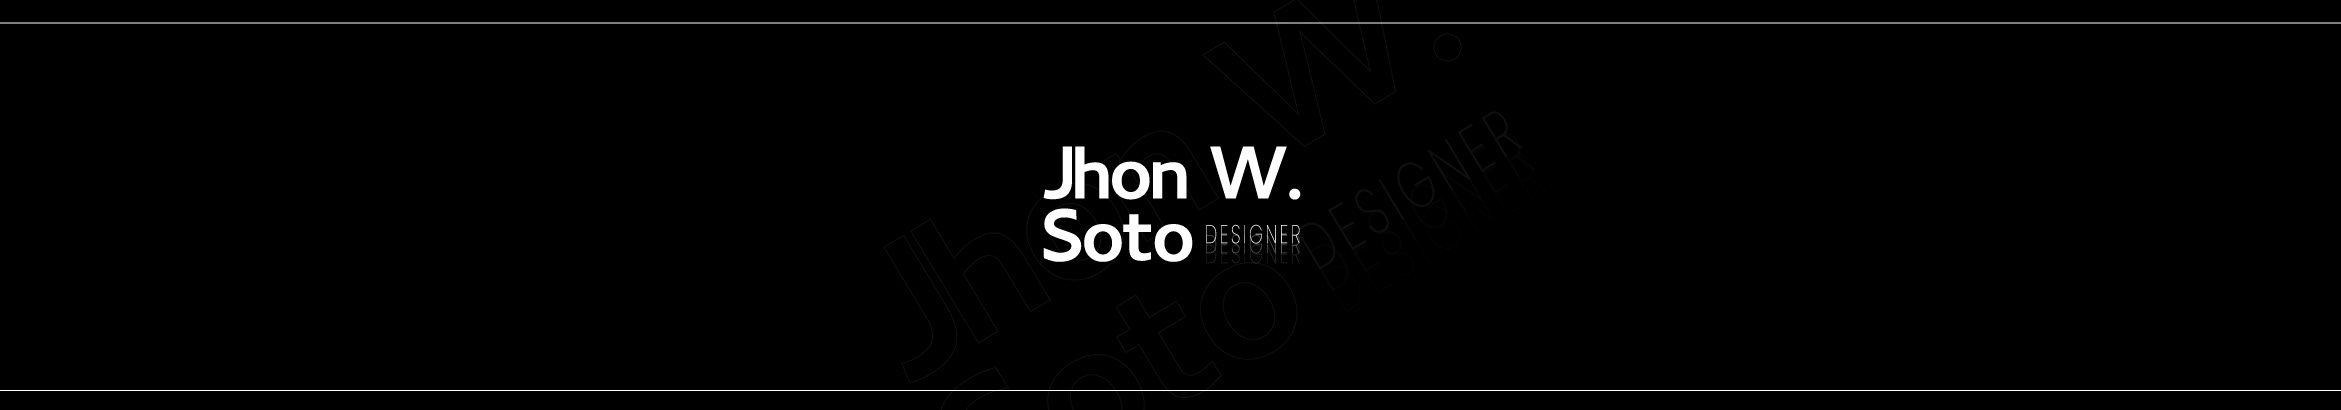 Jhon W Soto's profile banner